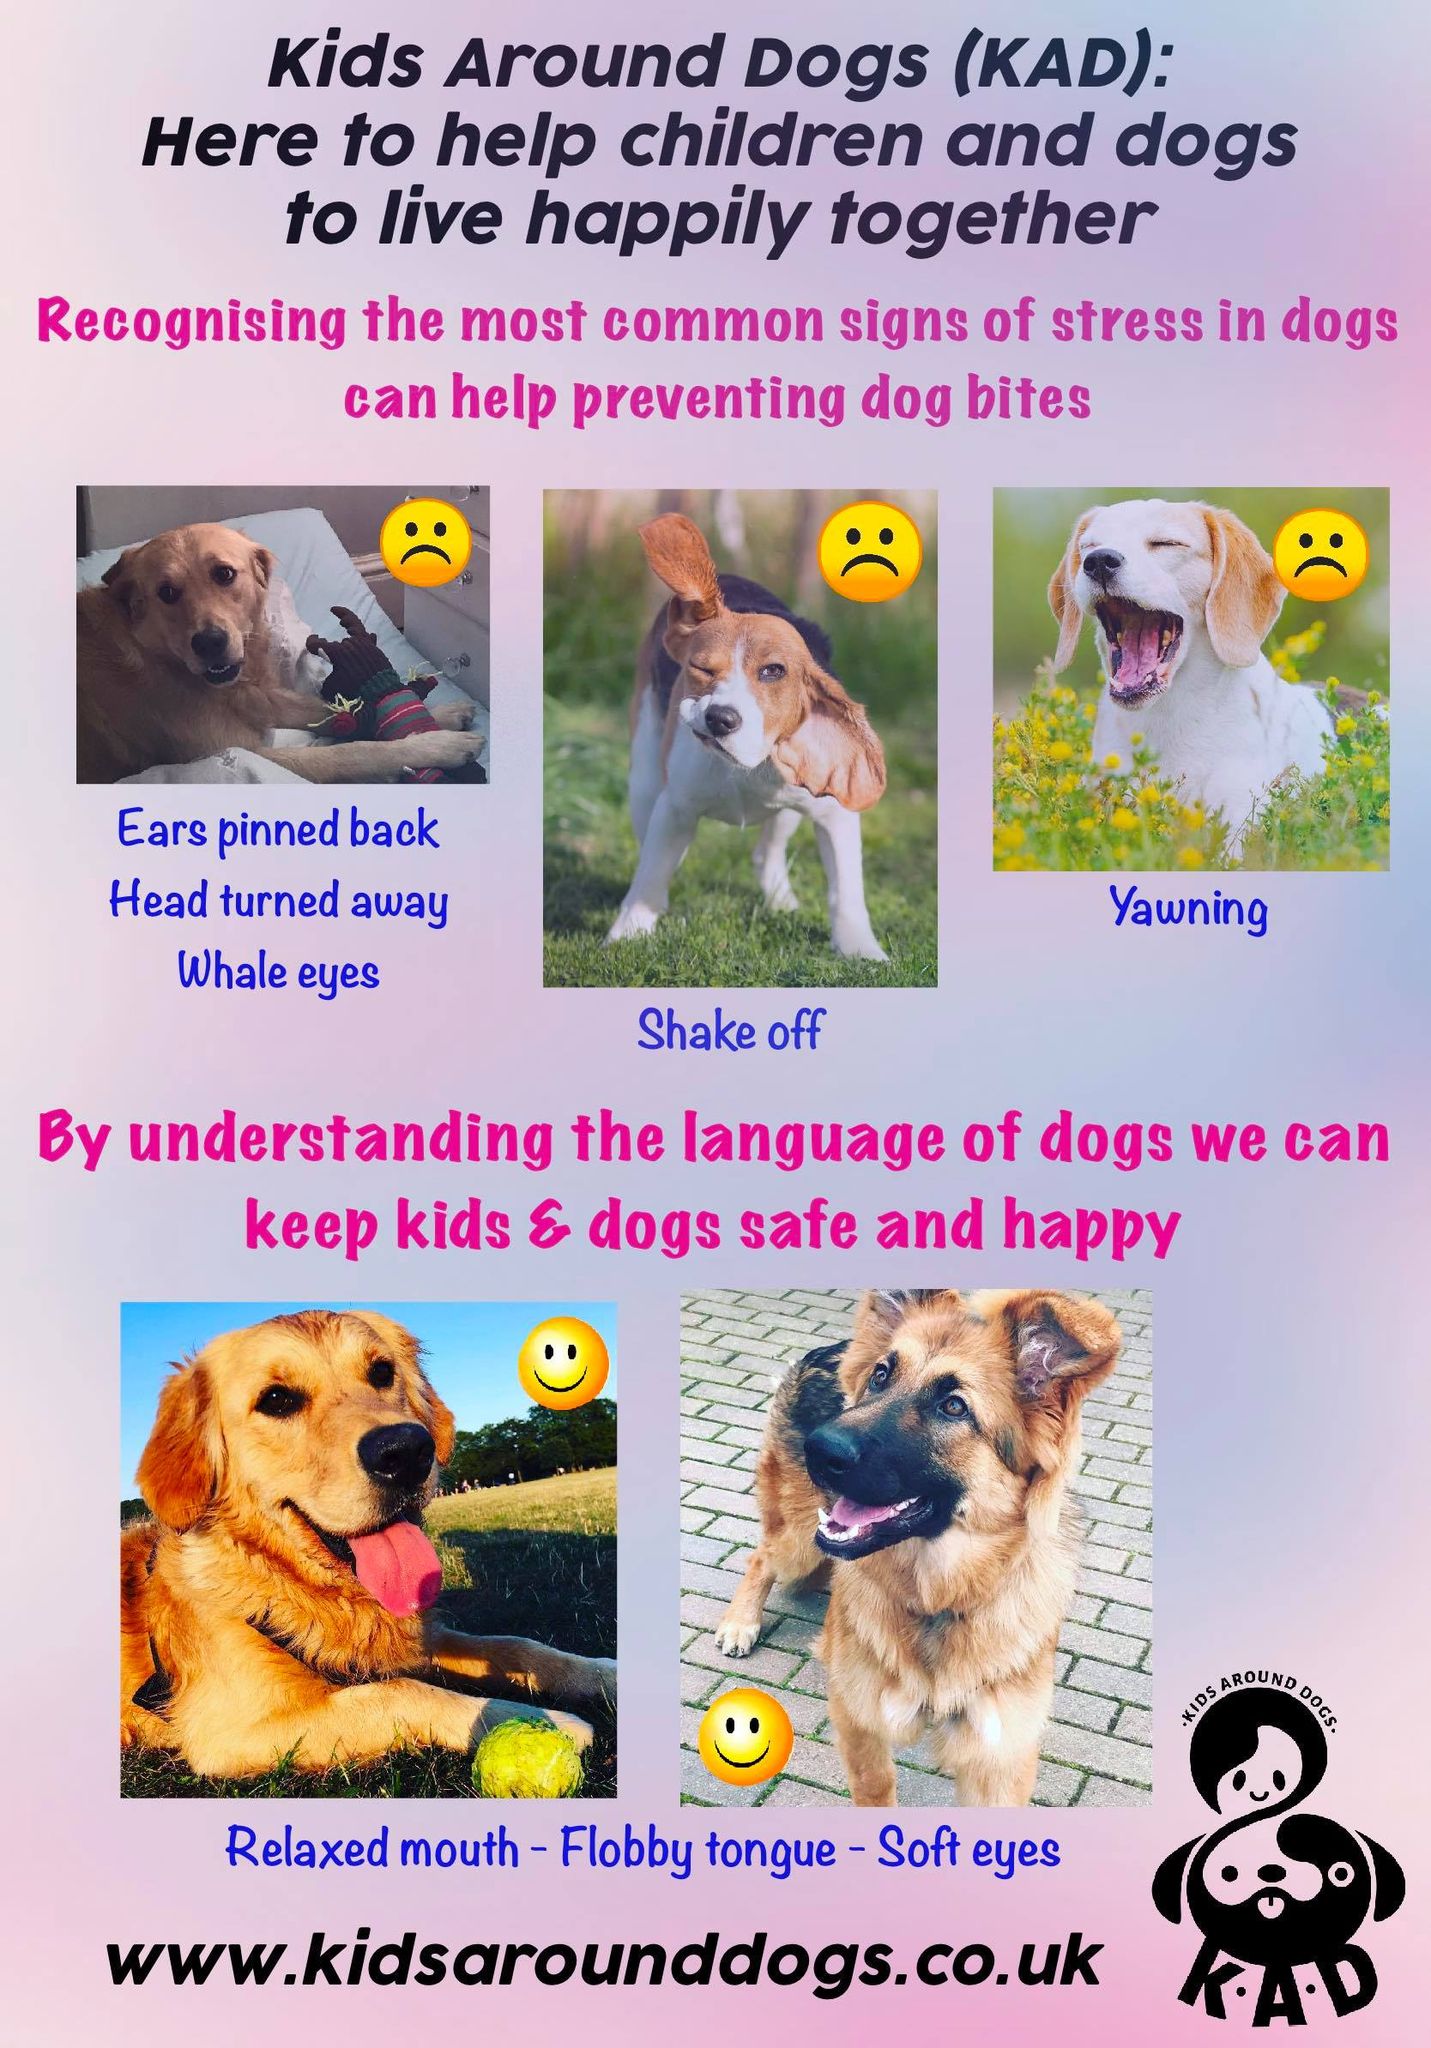 Being safe around dogs